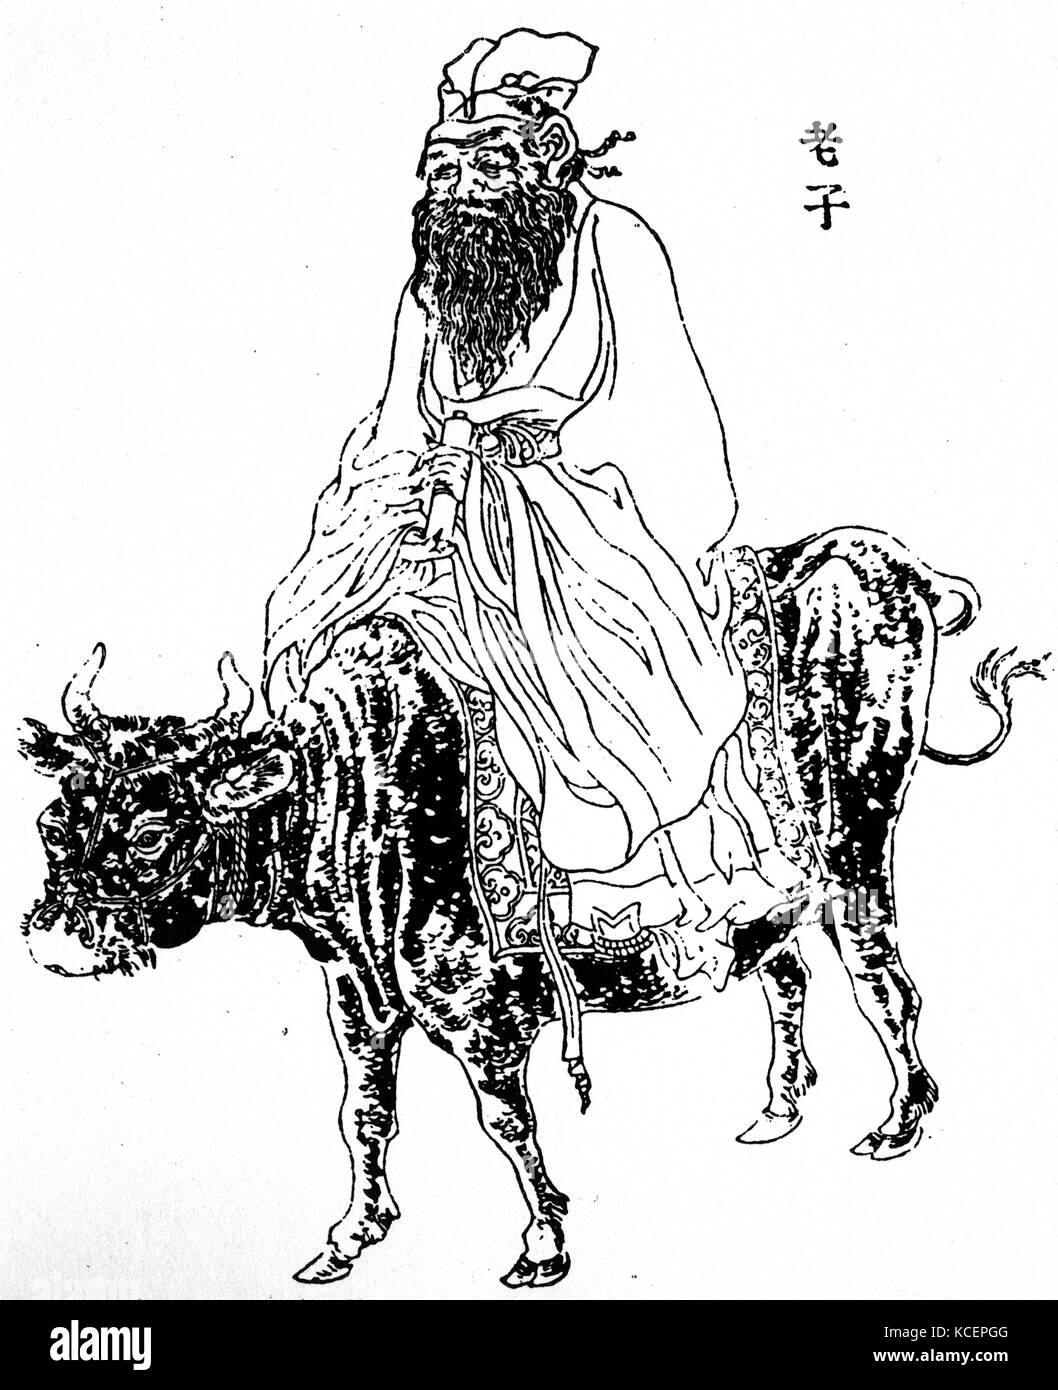 Illustration Laozi (604 BC- 531BC) Un ancien philosophe chinois, fondateur du Taoïsme et écrivain. En date du 6e siècle avant J.-C. Banque D'Images